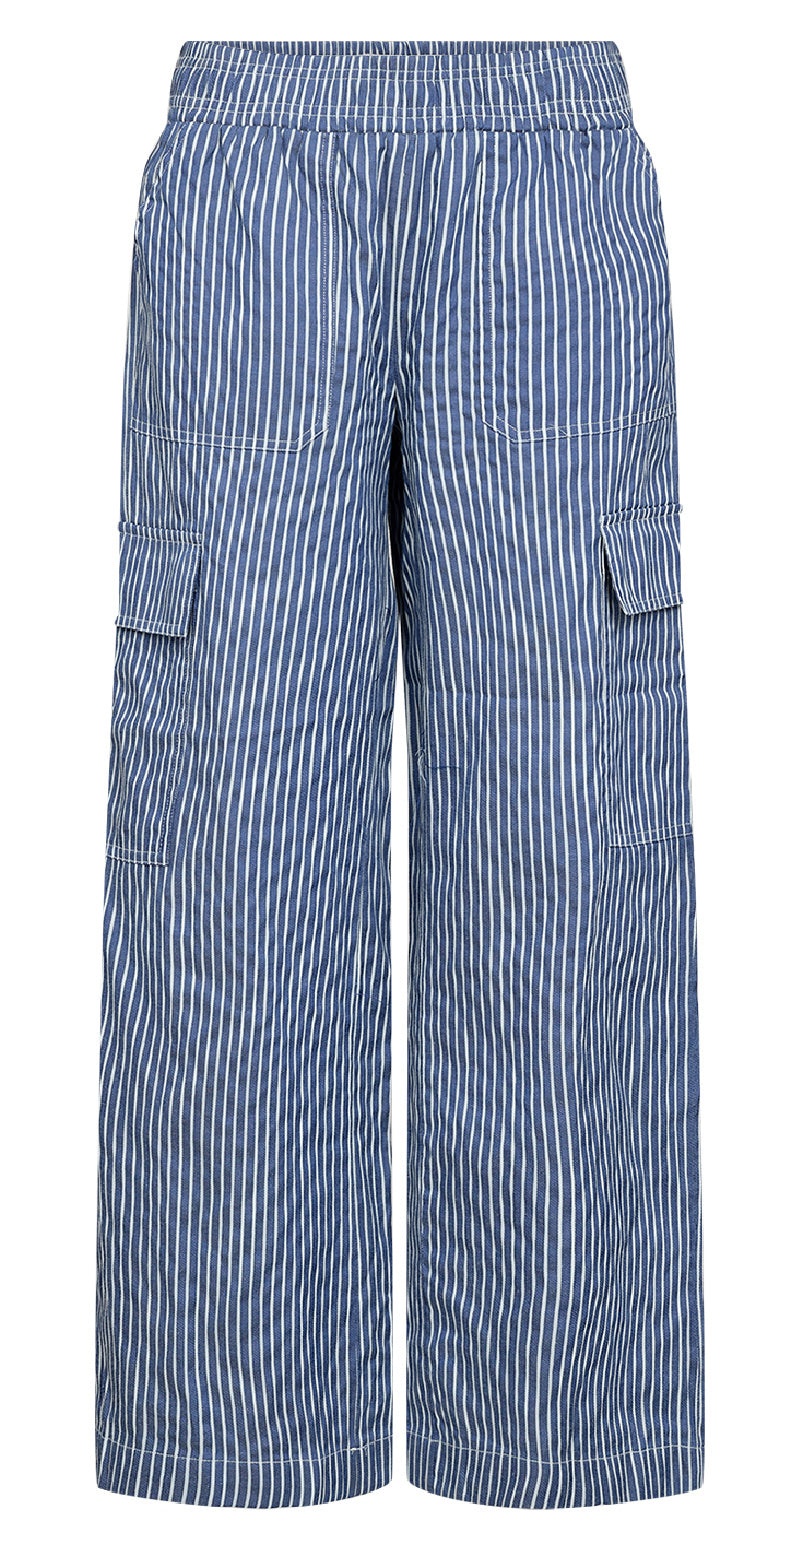 Bukser i stribet print blå